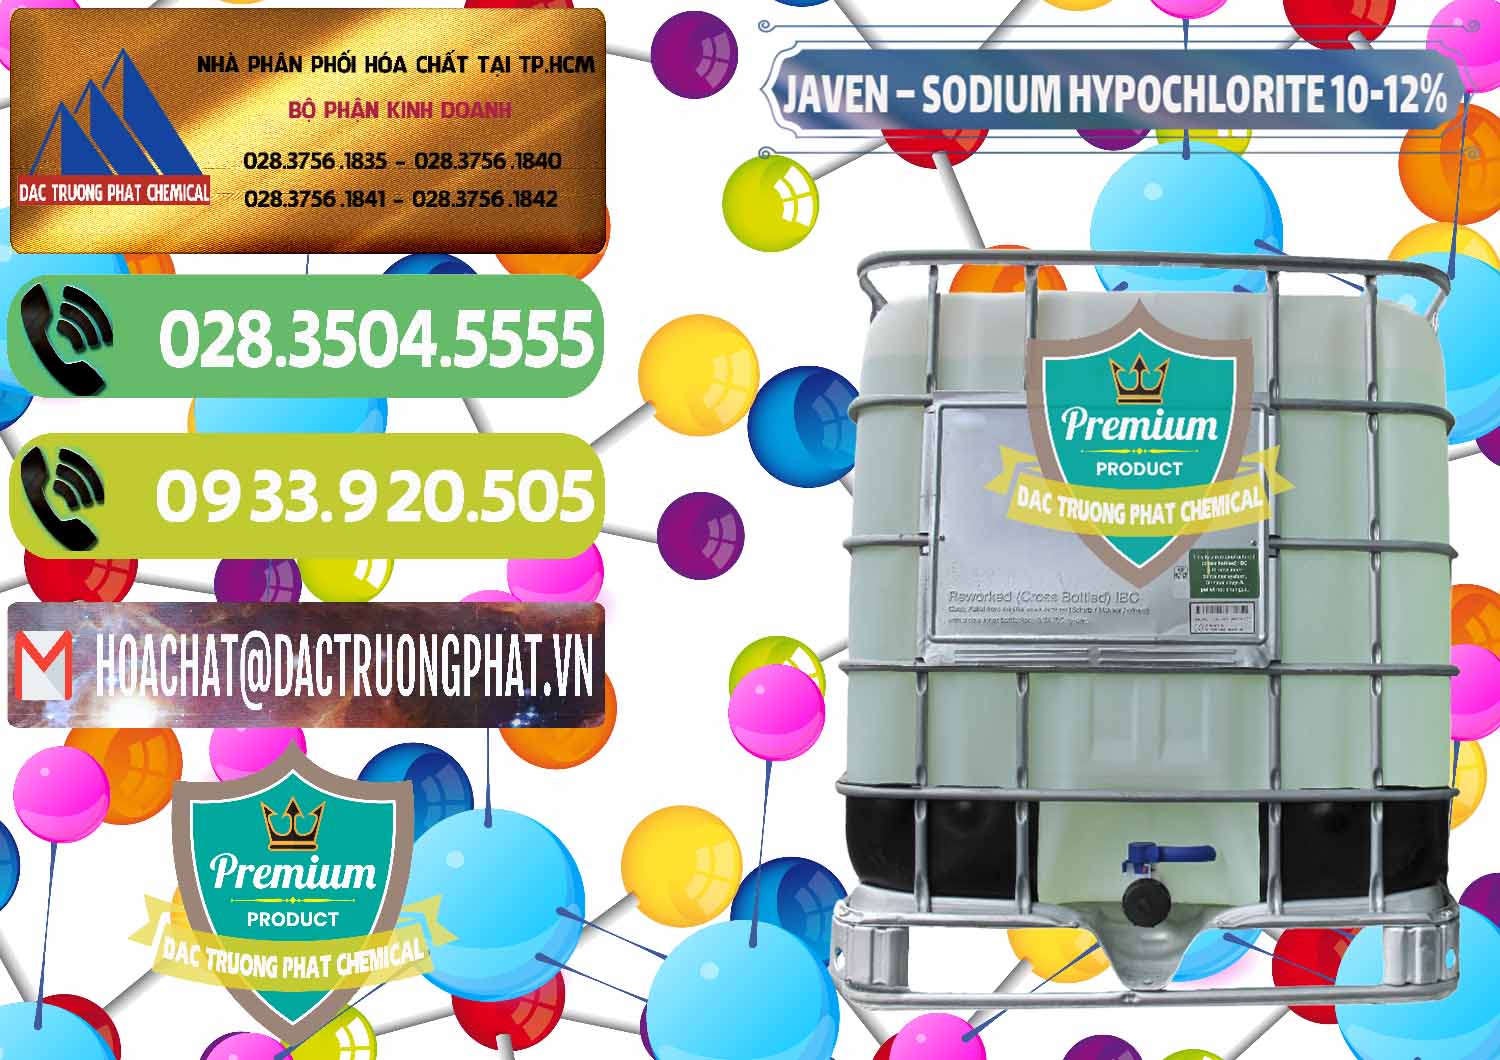 Cty cung cấp - bán Javen - Sodium Hypochlorite 10-12% Việt Nam - 0188 - Chuyên phân phối và cung ứng hóa chất tại TP.HCM - hoachatmientay.vn